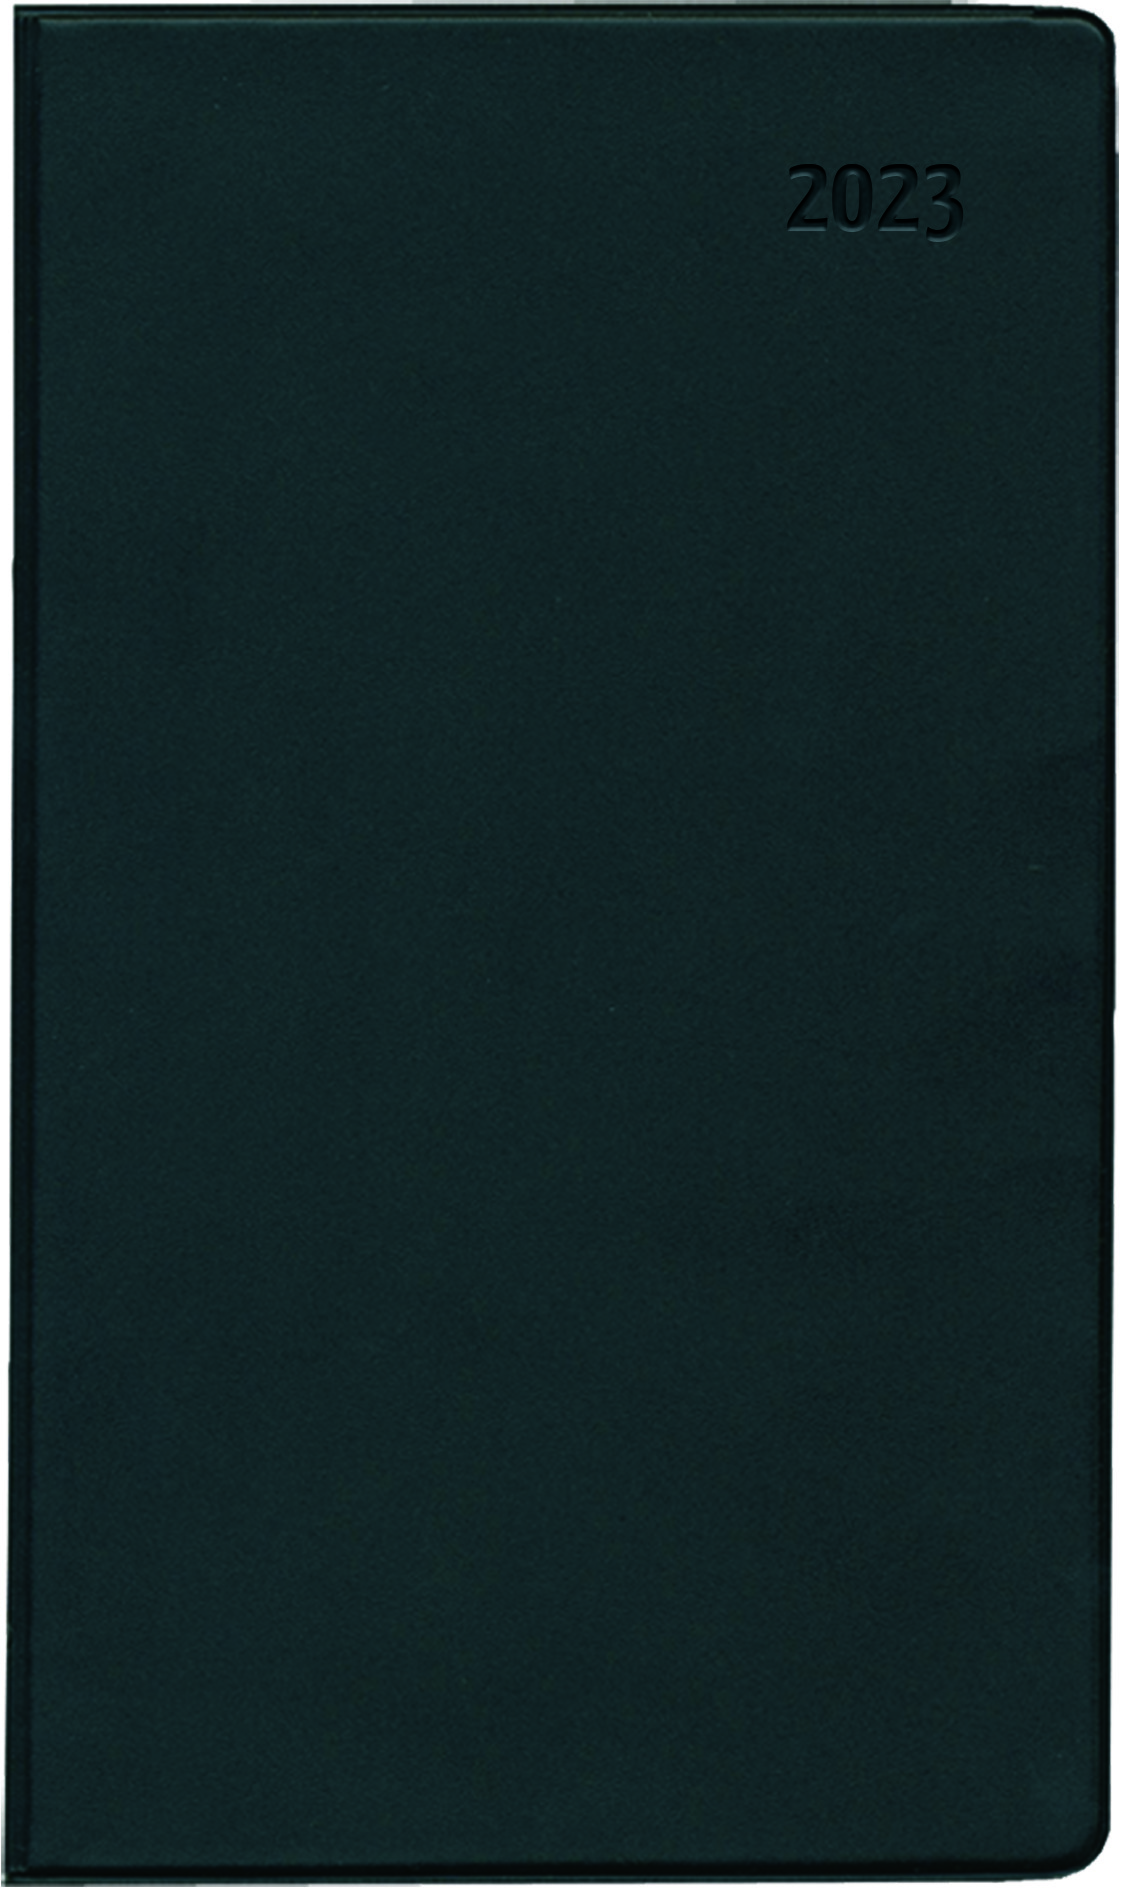 Taschenkalender 1M 2S schwarz ZETTLER 609971/520-1020 9,5x16cm